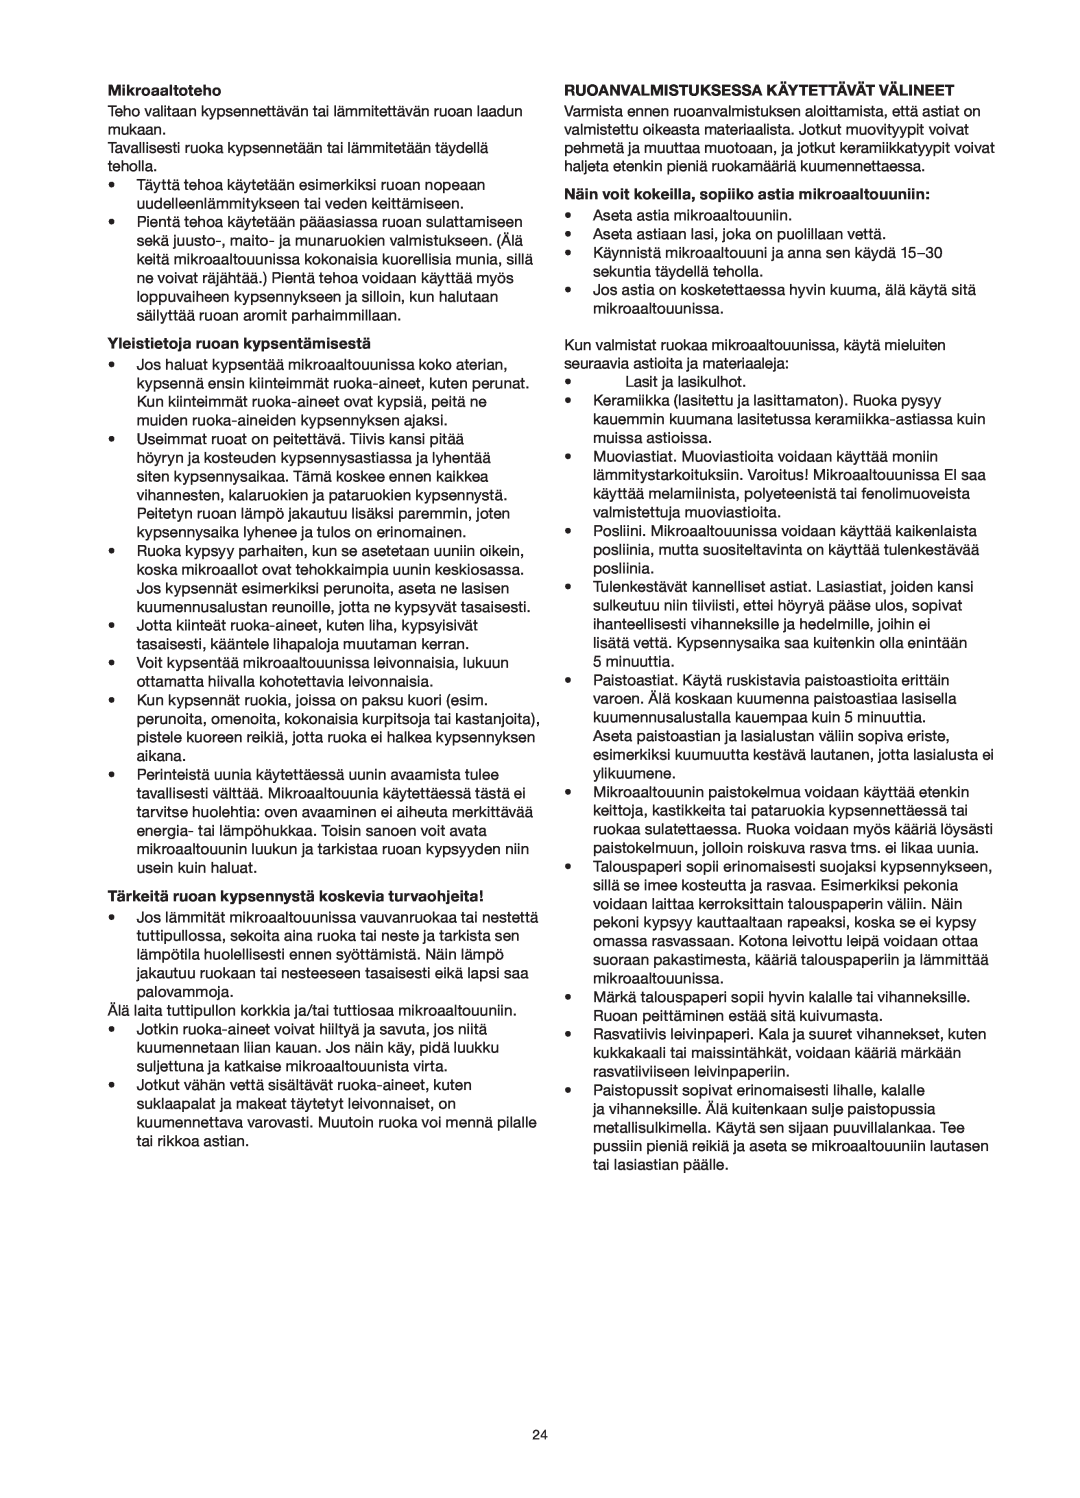 Melissa 253-013 manual Mikroaaltoteho, Yleistietoja ruoan kypsentämisestä, Tärkeitä ruoan kypsennystä koskevia turvaohjeita 